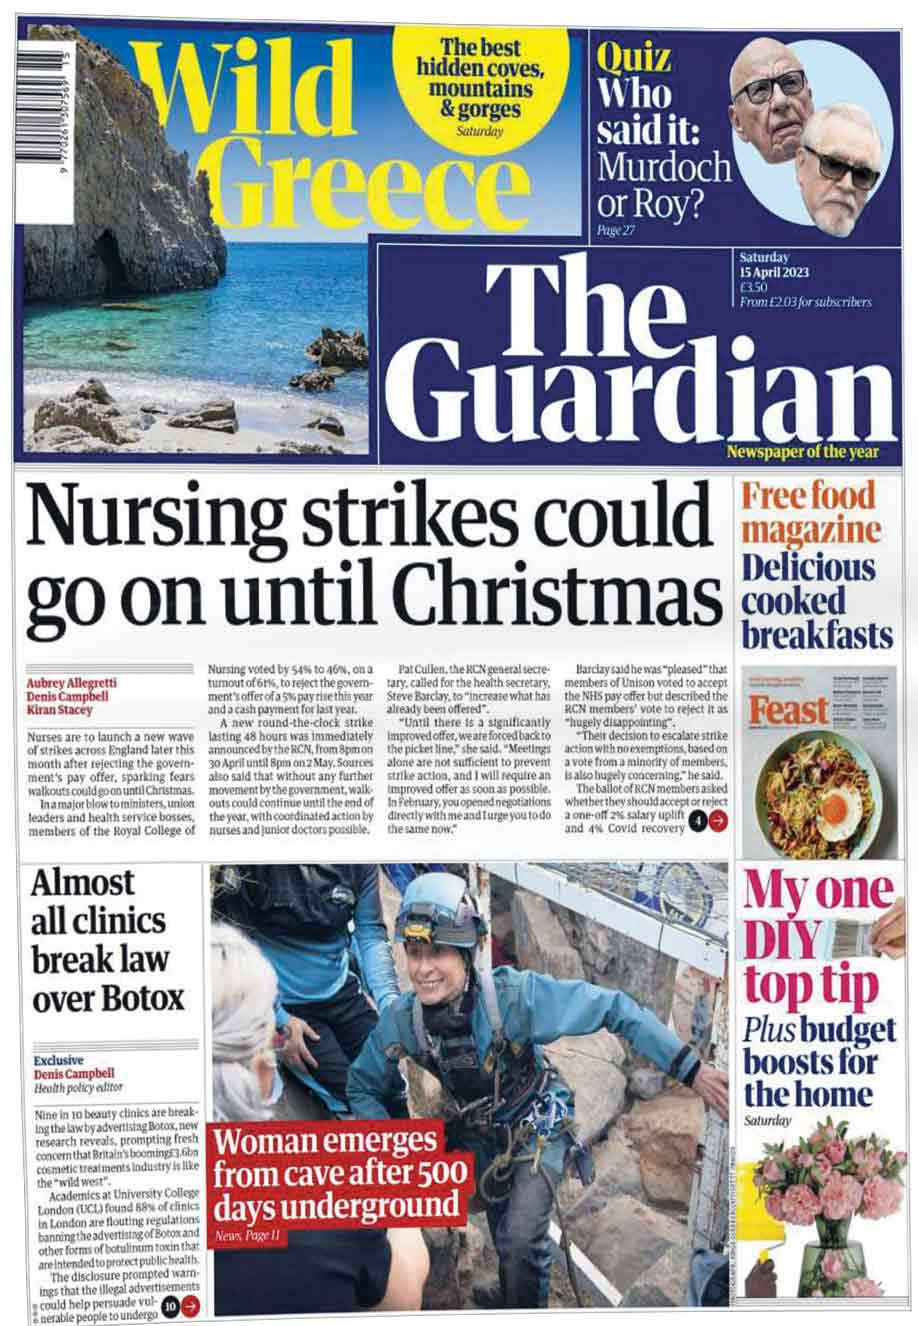 احتمال ادامه اعتصاب پرستاران تا کریسمس